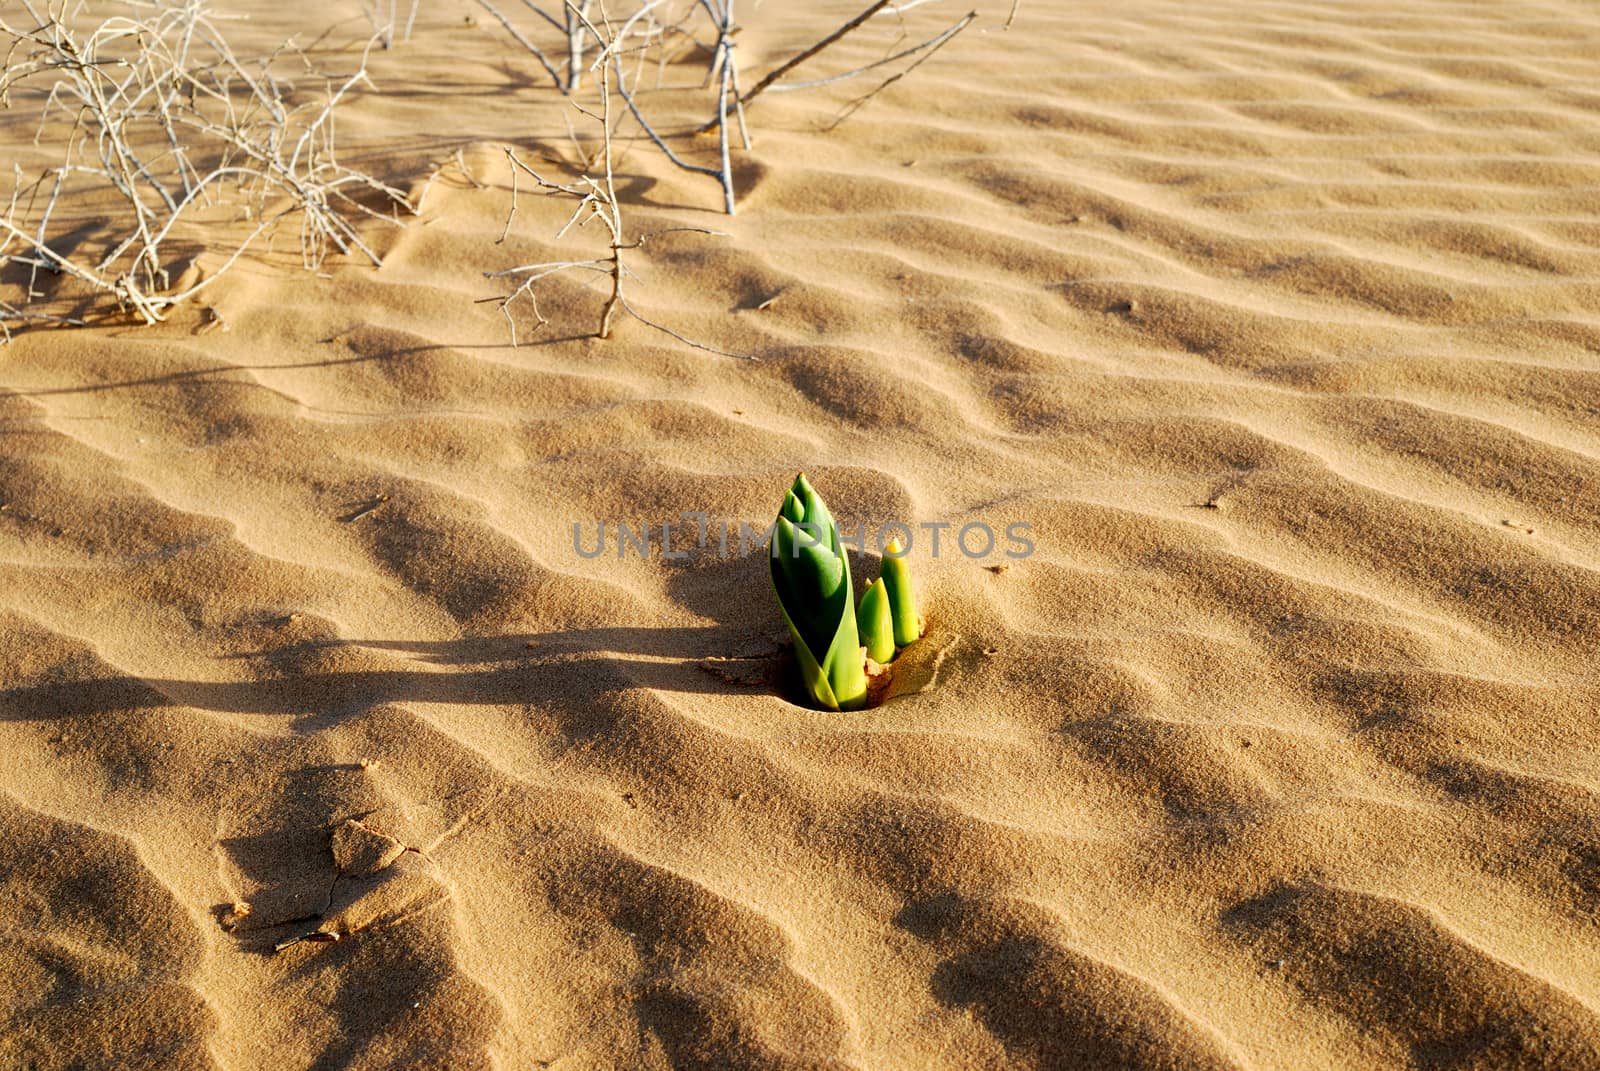 Green plant in the sandy desert. Taken in desert Negev, Israel.